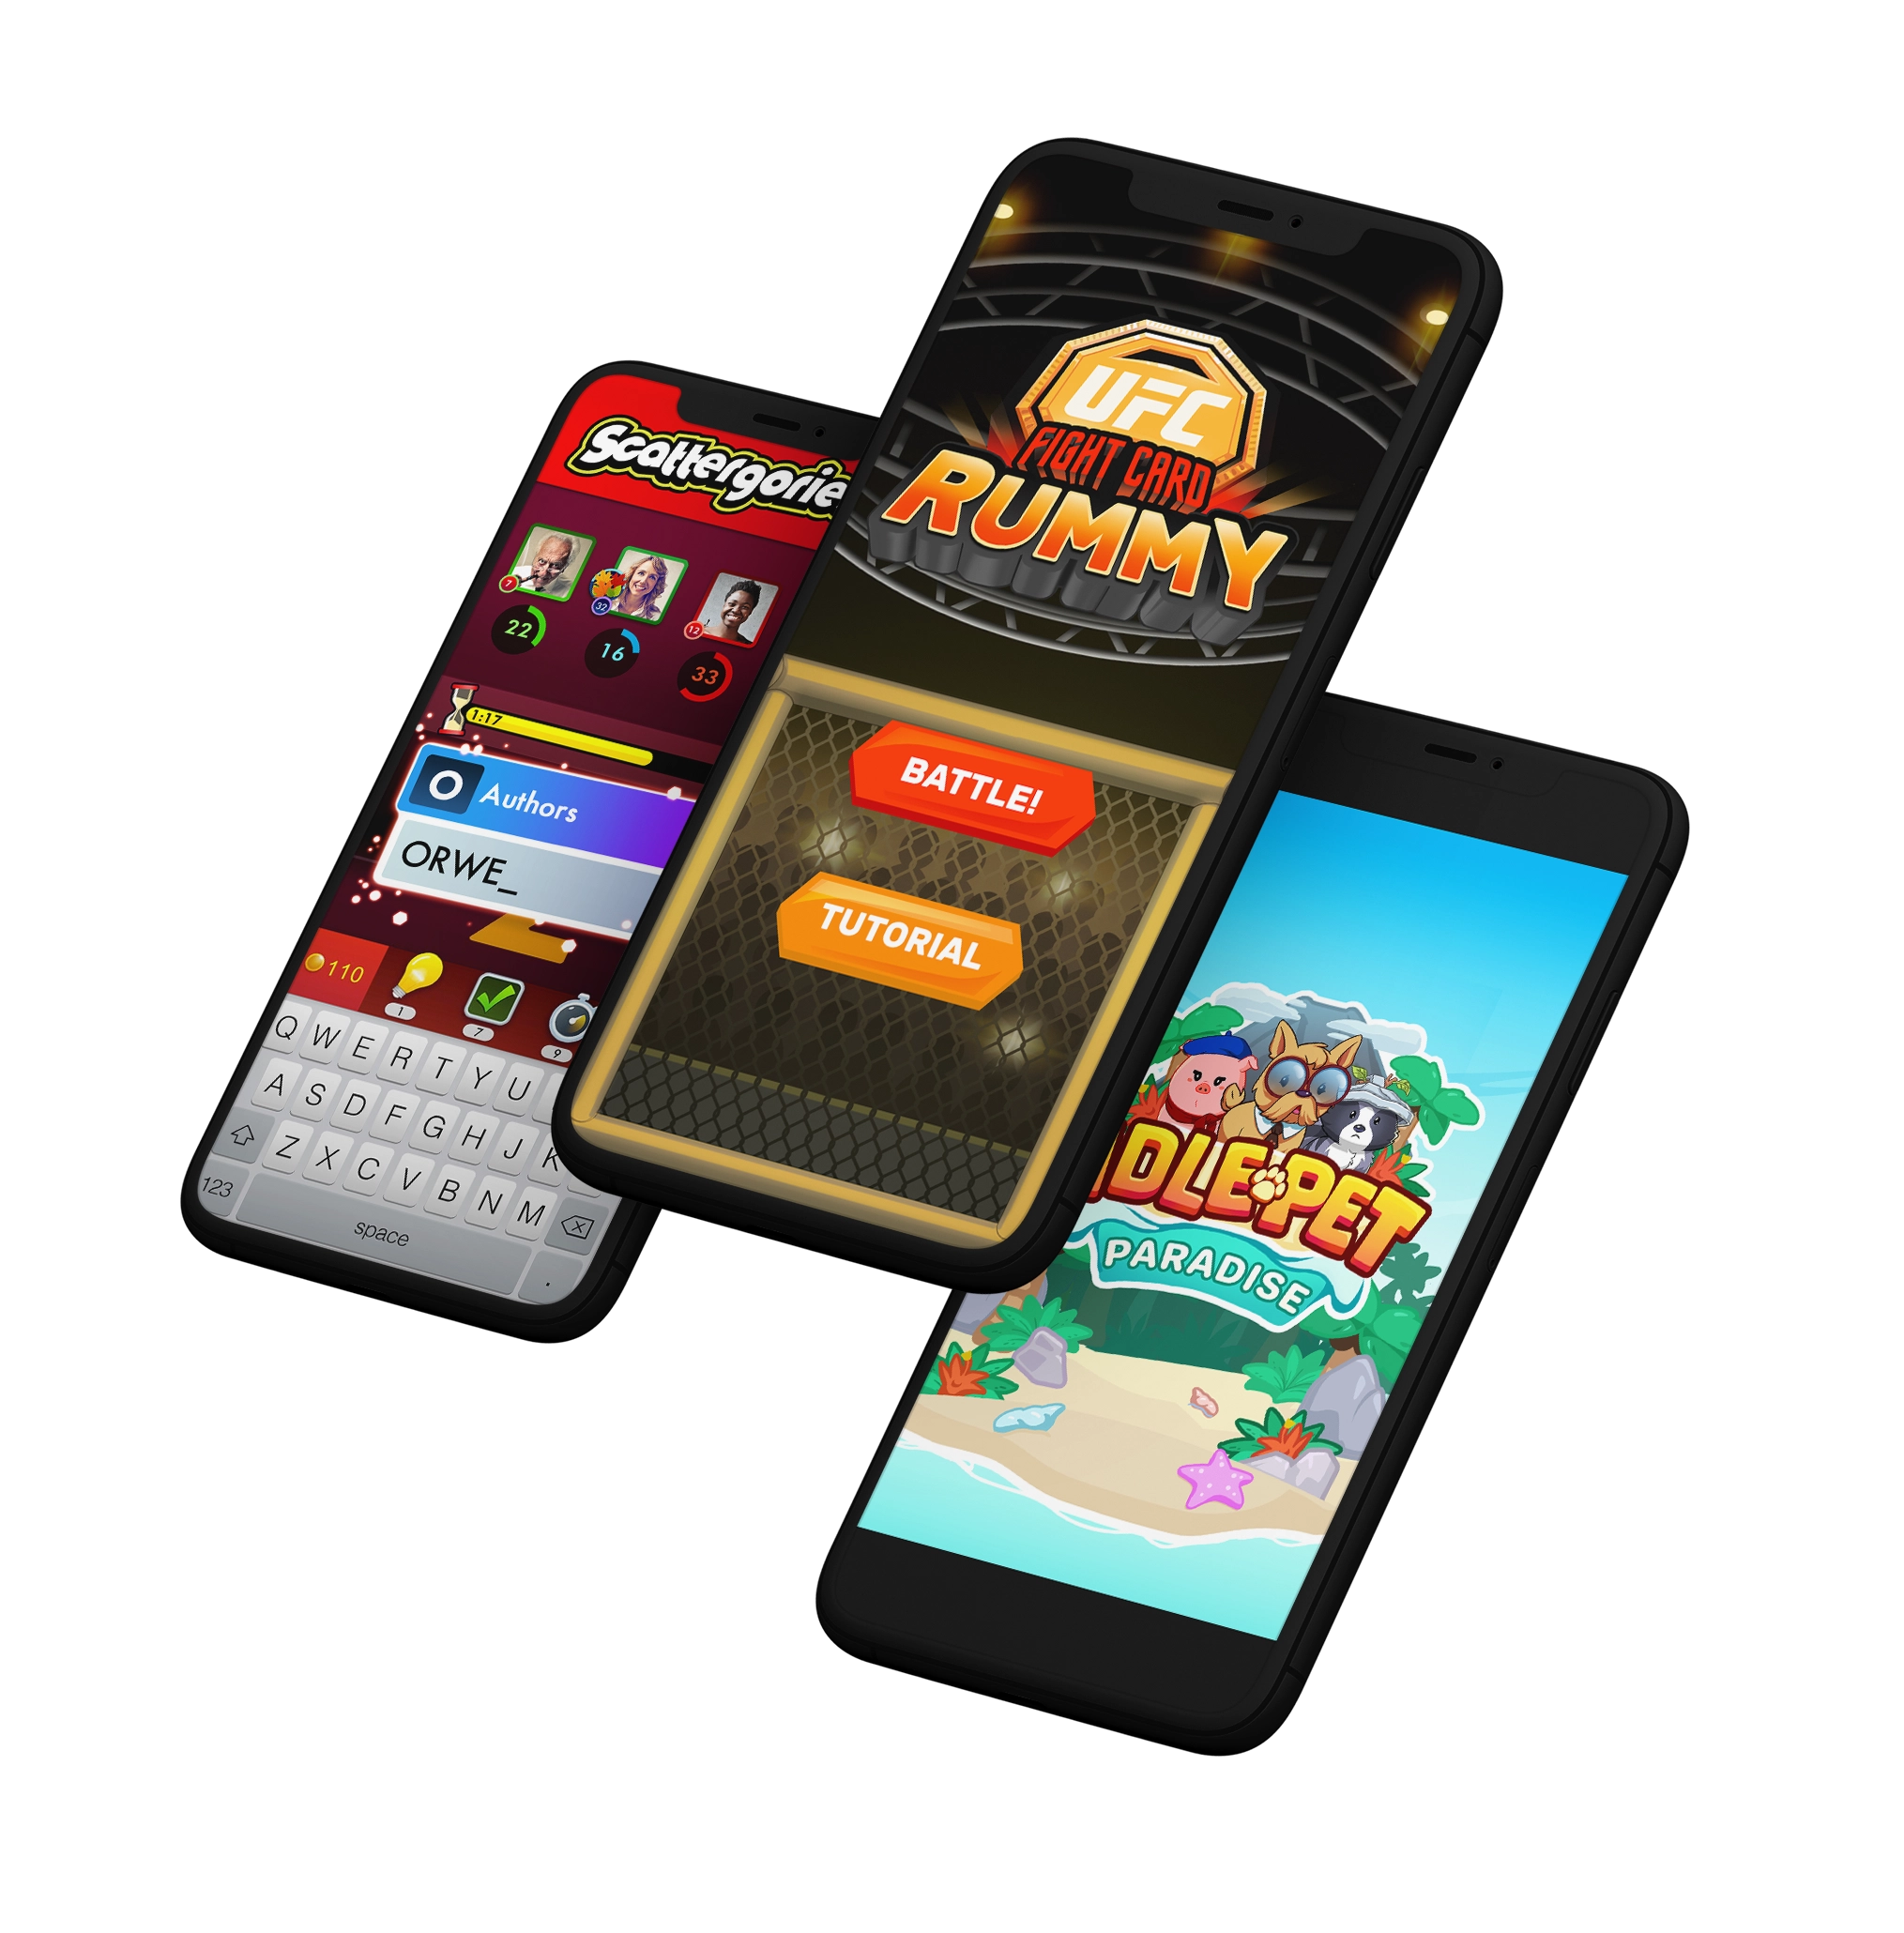 Fun and Creative Web3 Mobile Gaming